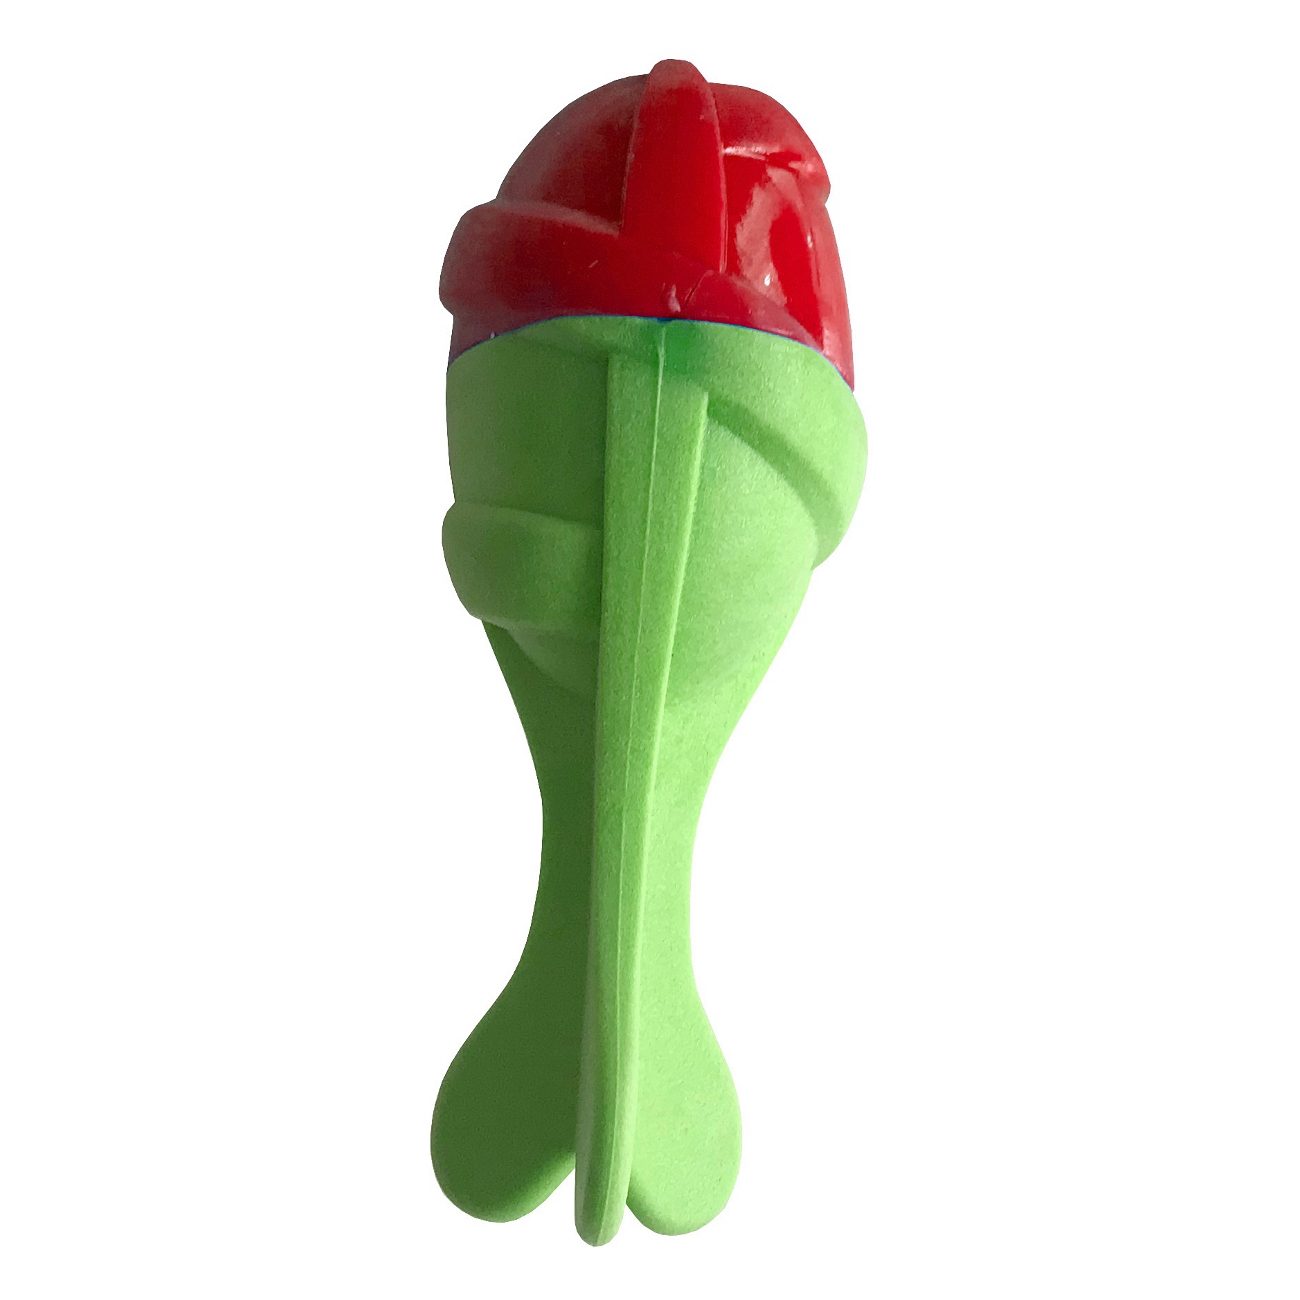 Lisinya205 Sağlam Plastik Sesli Balık Köpek Oyuncağı 13 x 5 cm Kırmızı Yeşil